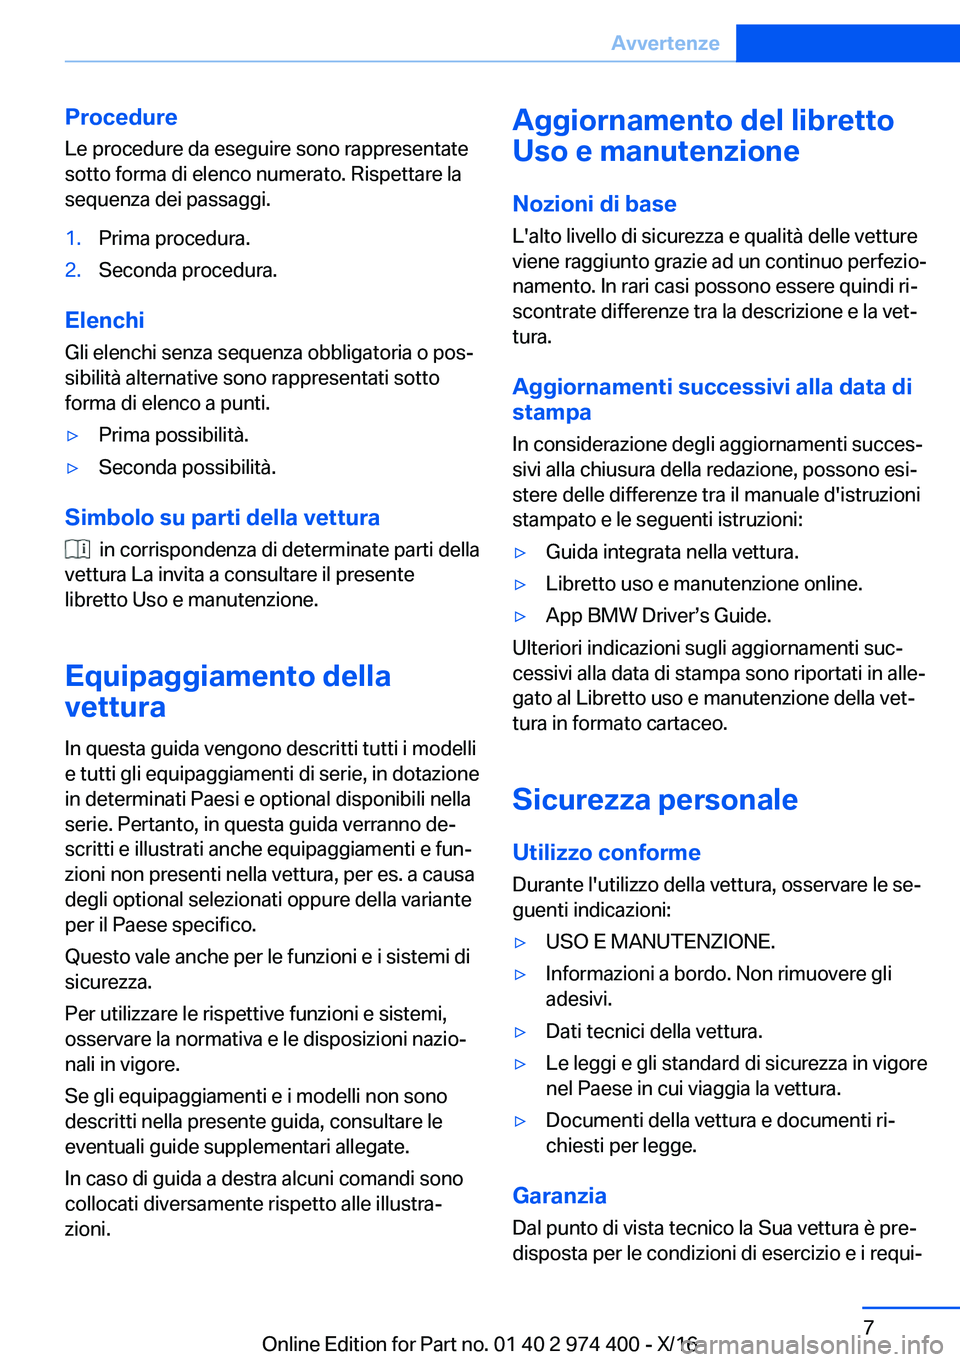 BMW 4 SERIES GRAN COUPE 2017  Libretti Di Uso E manutenzione (in Italian) �P�r�o�c�e�d�u�r�e�L�e� �p�r�o�c�e�d�u�r�e� �d�a� �e�s�e�g�u�i�r�e� �s�o�n�o� �r�a�p�p�r�e�s�e�n�t�a�t�e�s�o�t�t�o� �f�o�r�m�a� �d�i� �e�l�e�n�c�o� �n�u�m�e�r�a�t�o�.� �R�i�s�p�e�t�t�a�r�e� �l�a�s�e�q